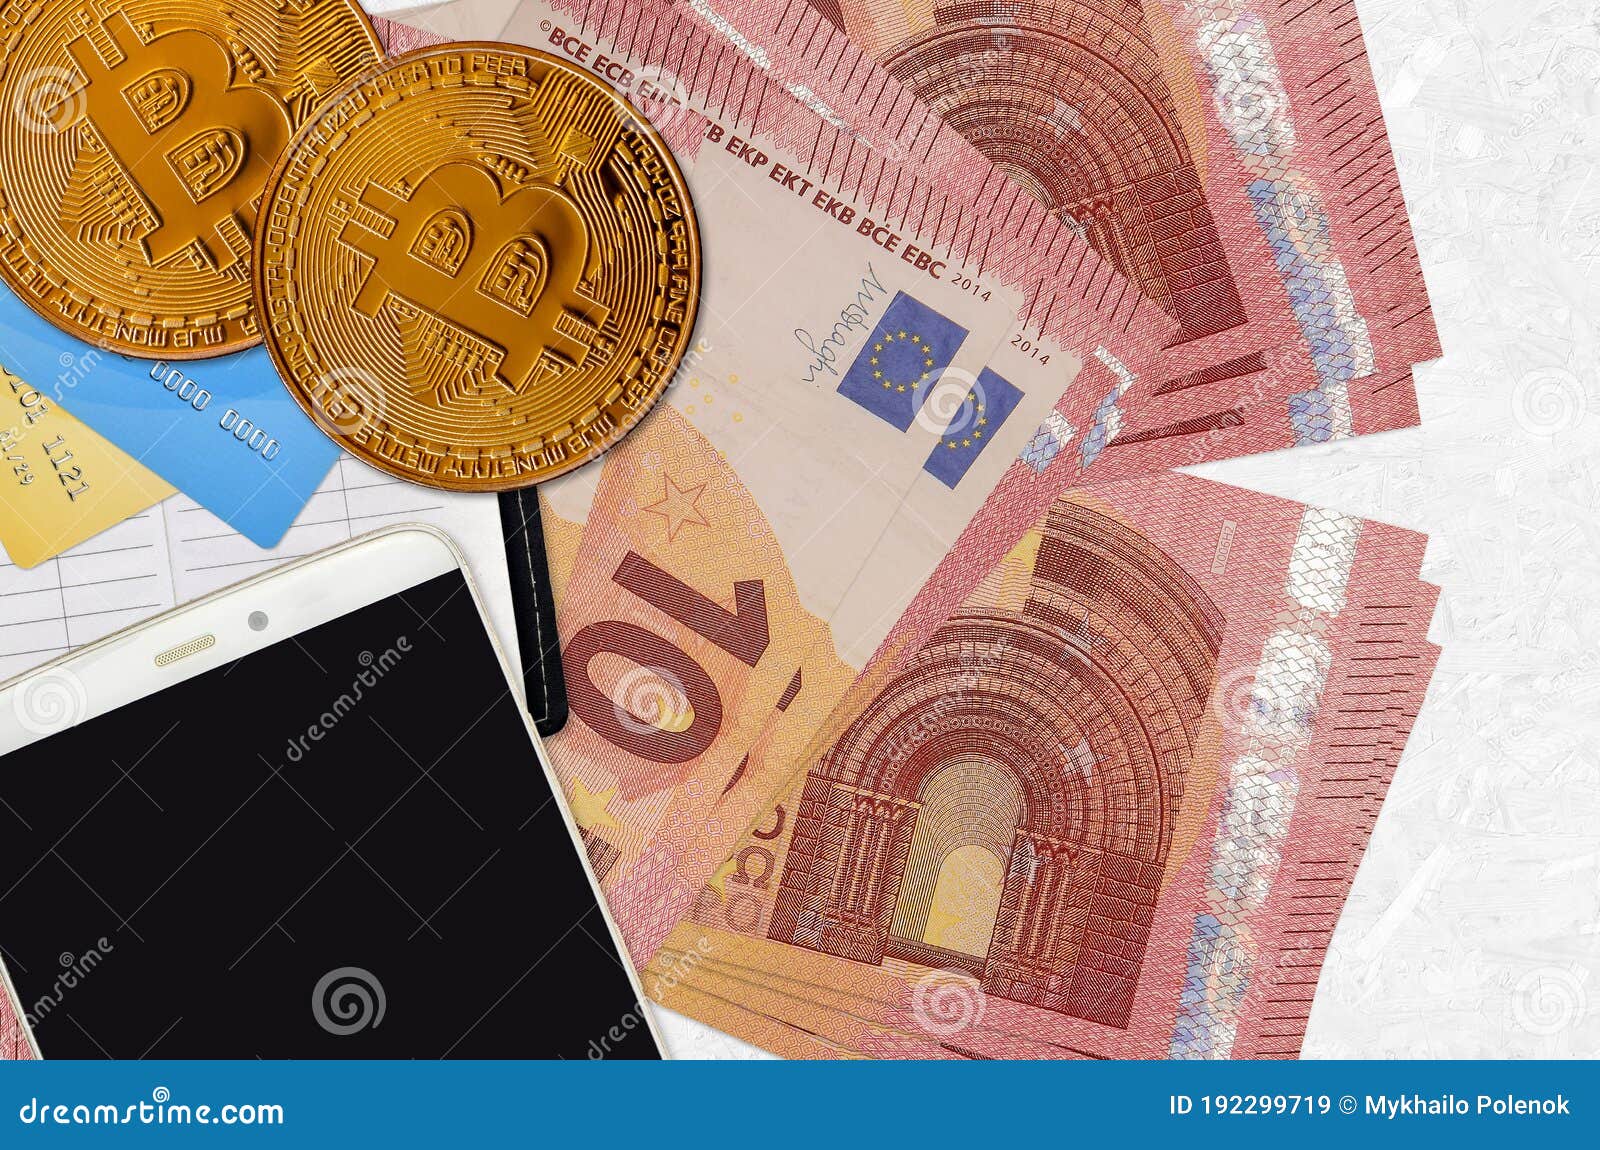 10 euros in bitcoins